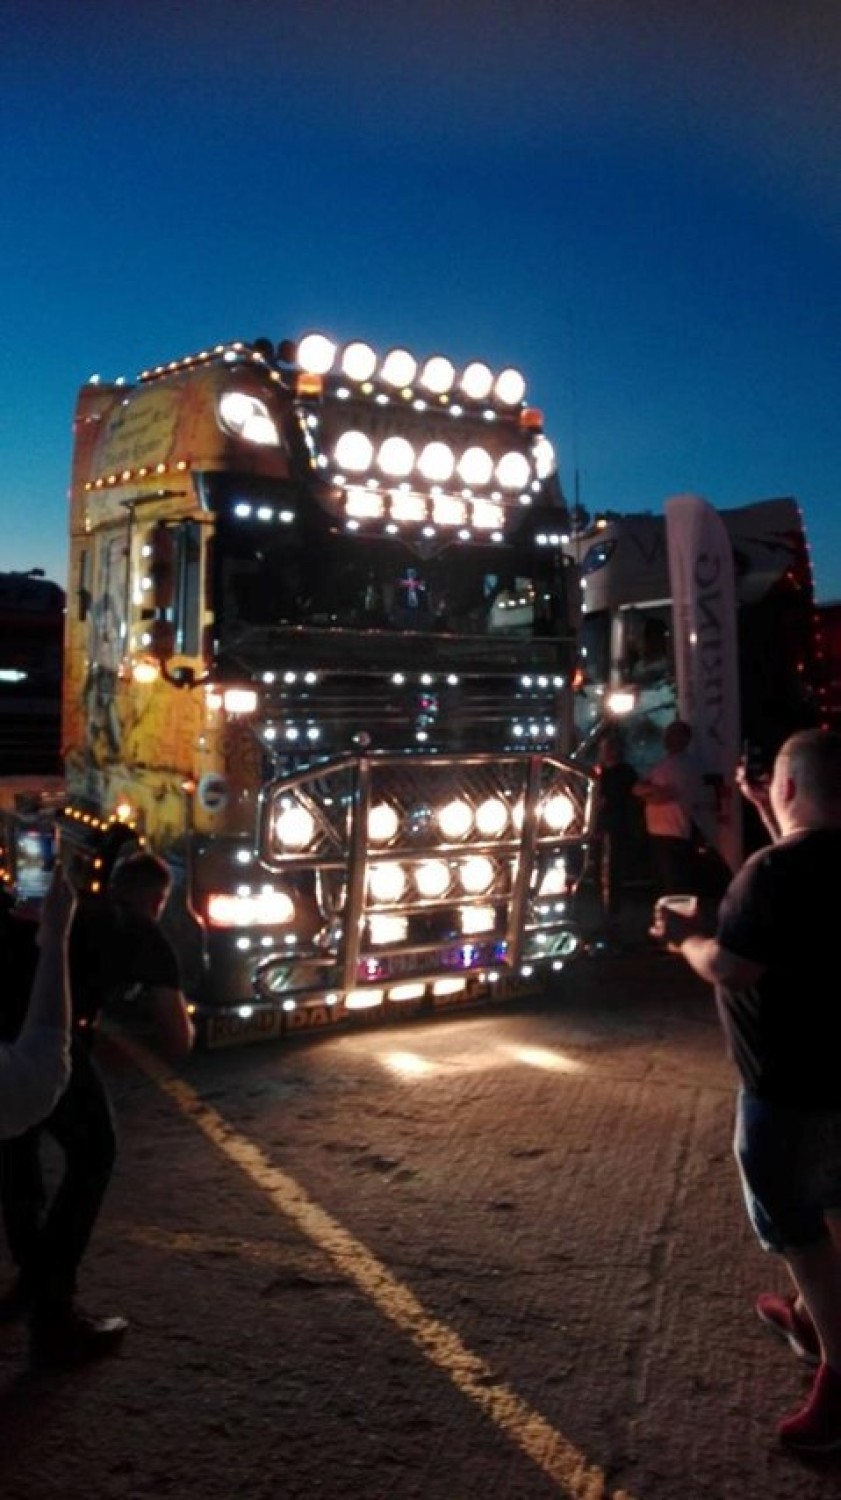 Pruszcz Gdański: Święcenie ciężarówek i efekty specjalne na "Nafri Truck" [ZDJĘCIA, WIDEO]